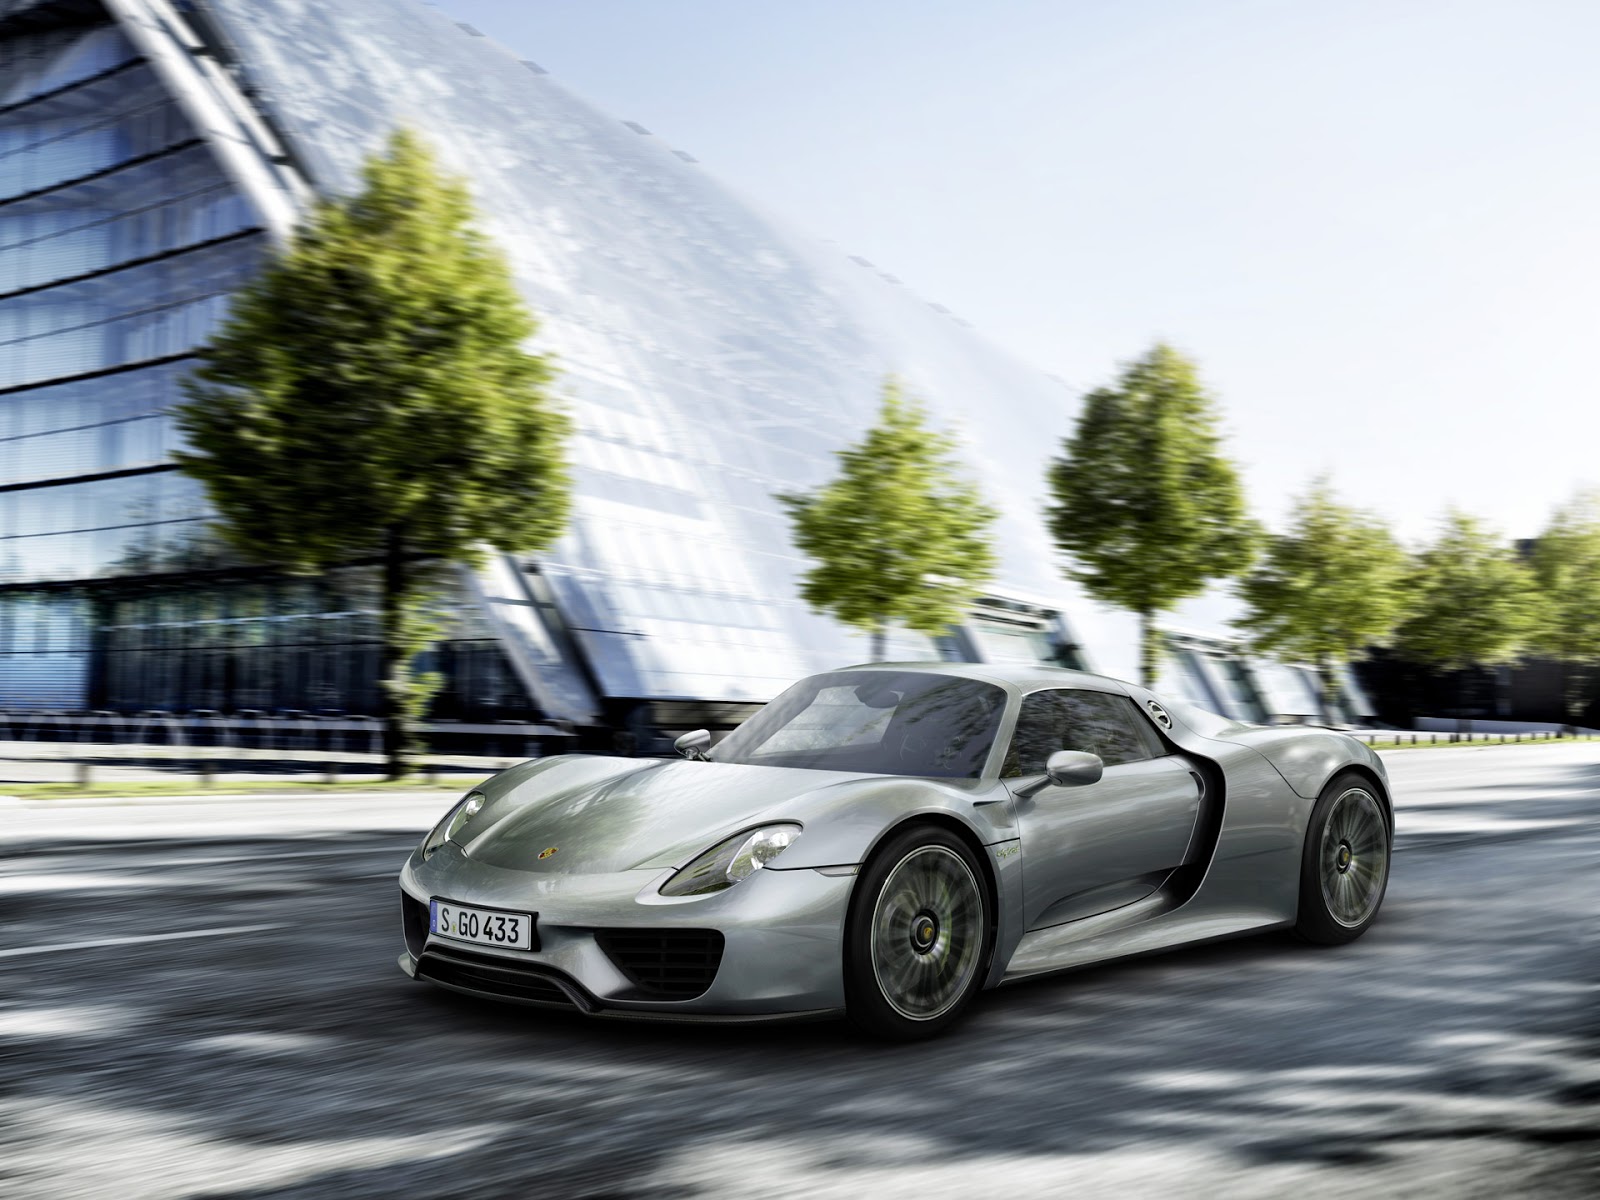 Porsche 918 Spyder 2014 | Hottest Car Wallpapers | Bestgarage